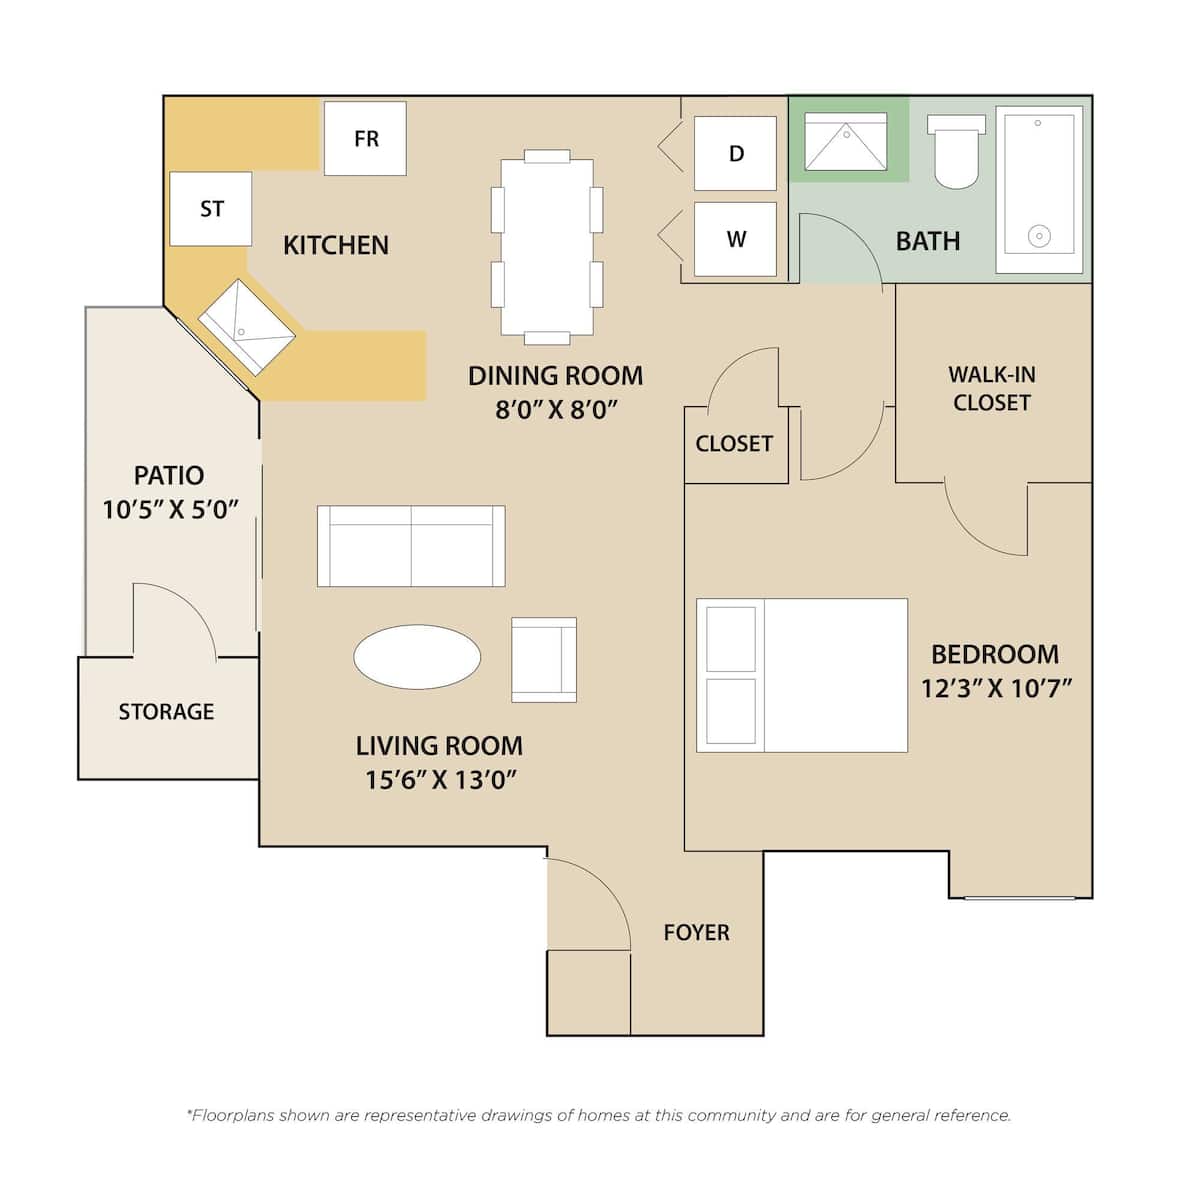 Floorplan diagram for 1 Bedroom / 1 Bath, showing 1 bedroom